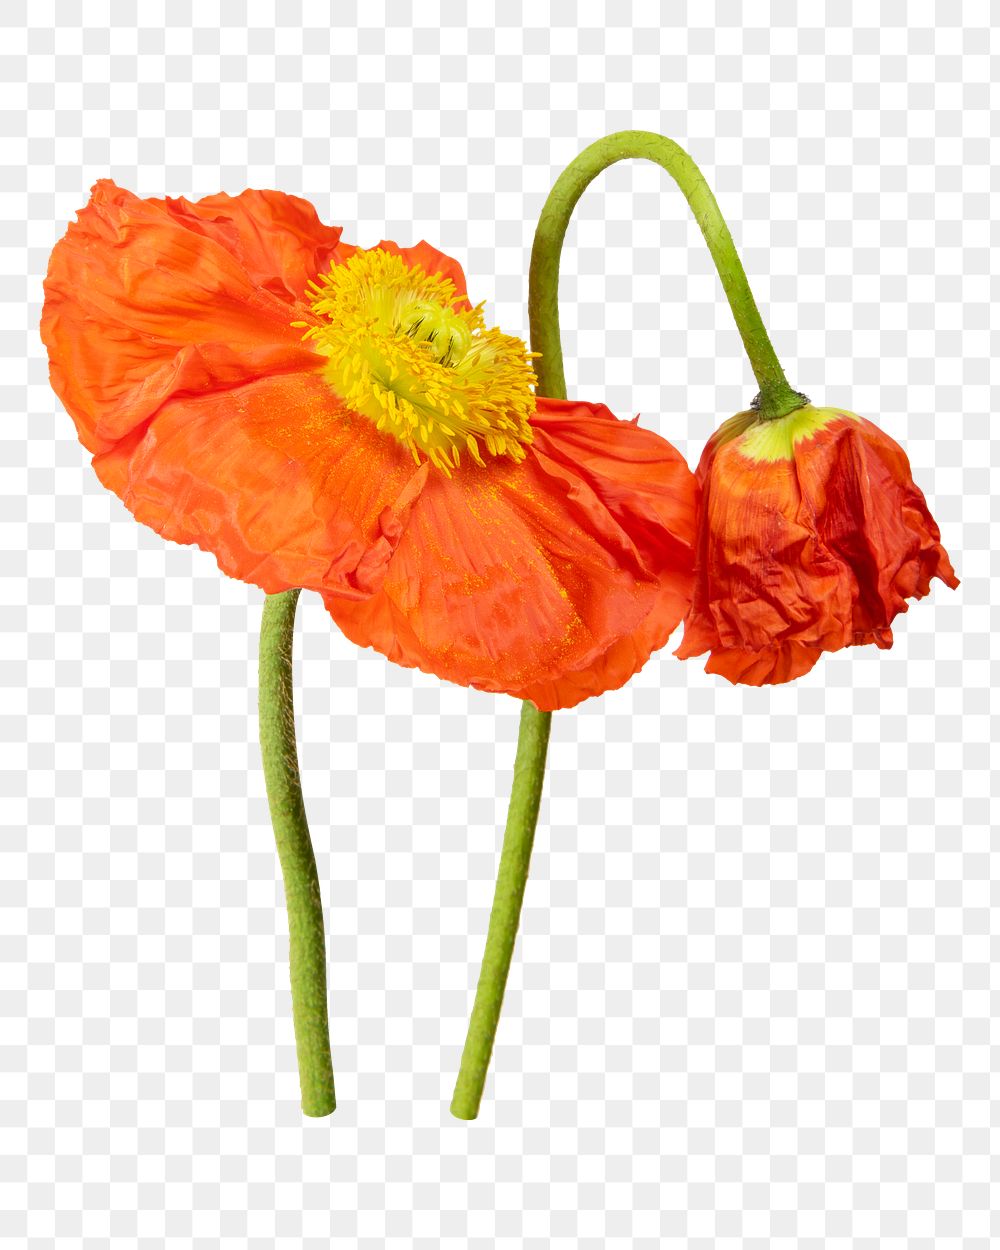 Orange poppy png flower sticker, transparent background